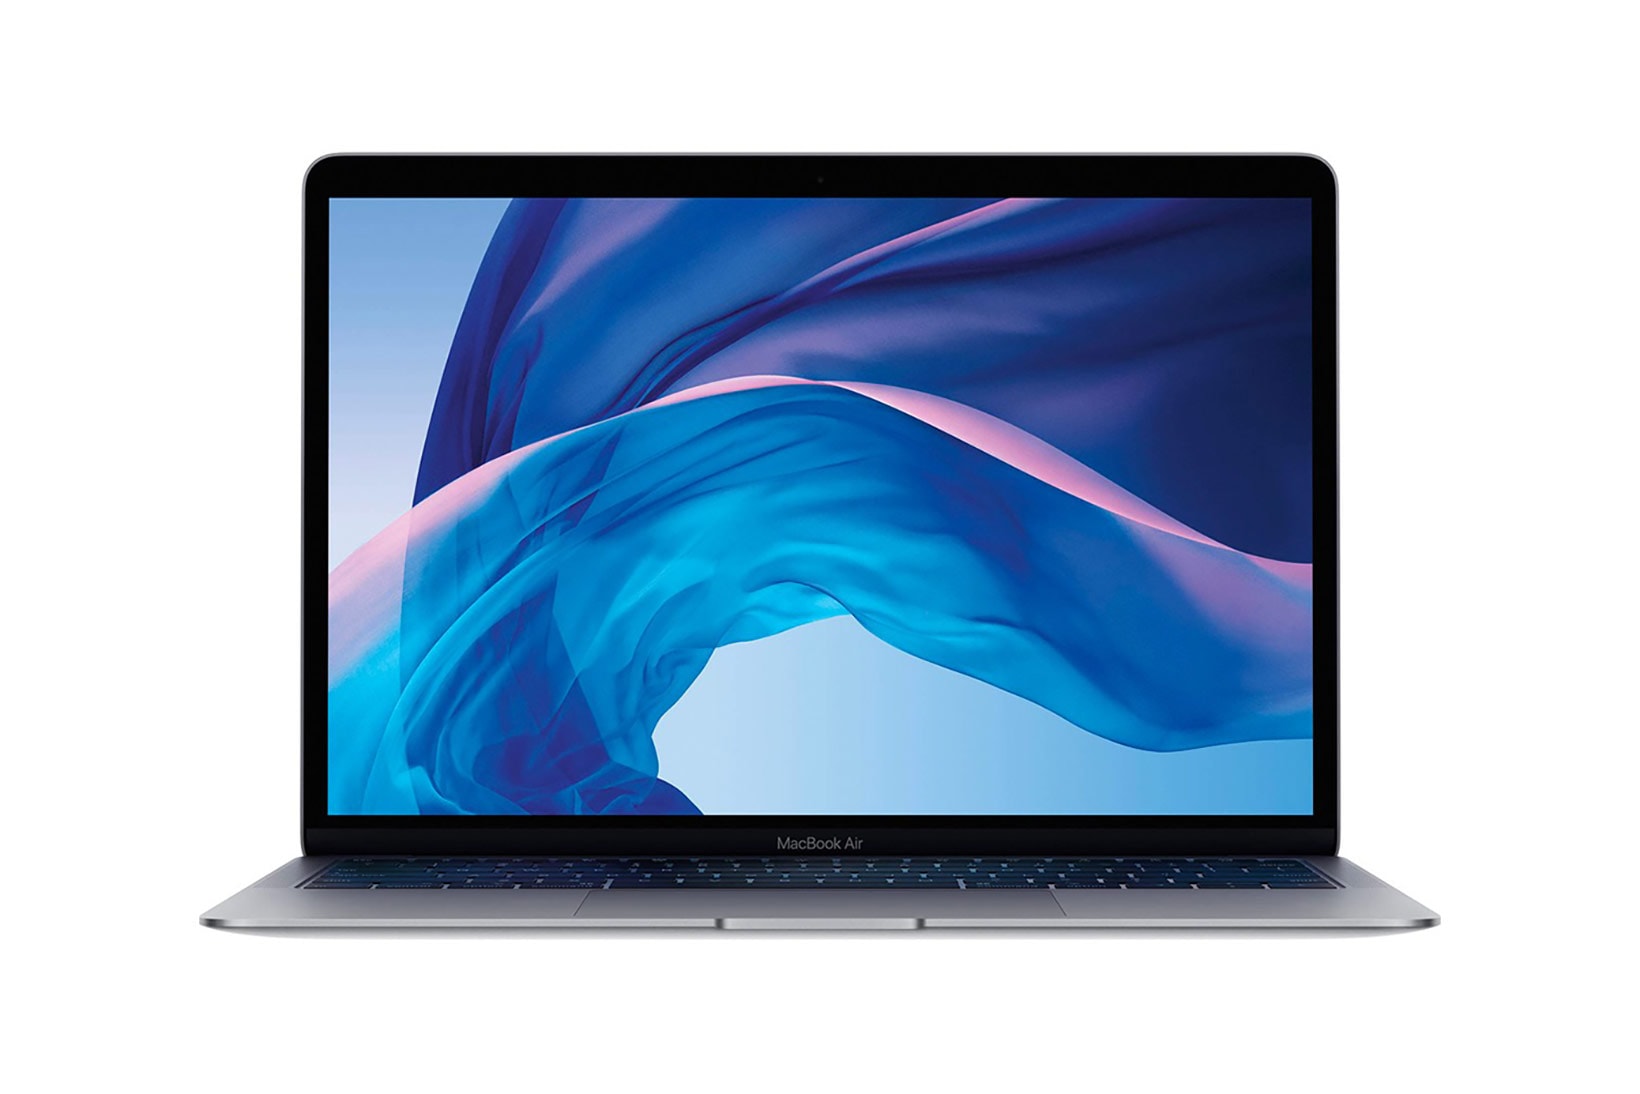 apple macbook air new thinner lighter laptop tech technology screen keyboard